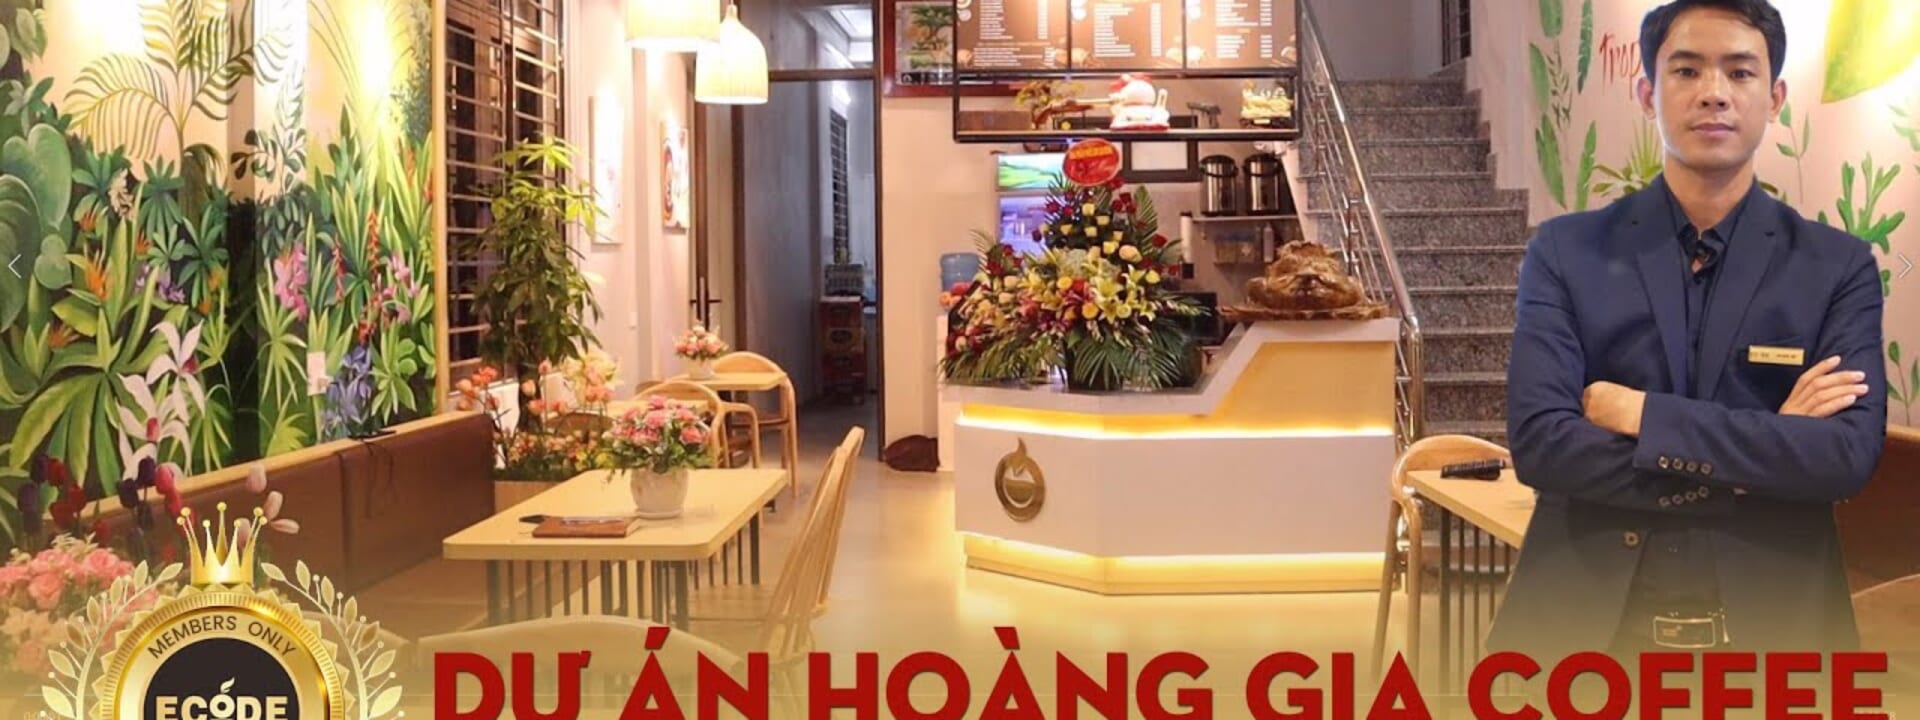 THI CÔNG CÔNG TRÌNH CAFE HOÀNG GIA CAFE